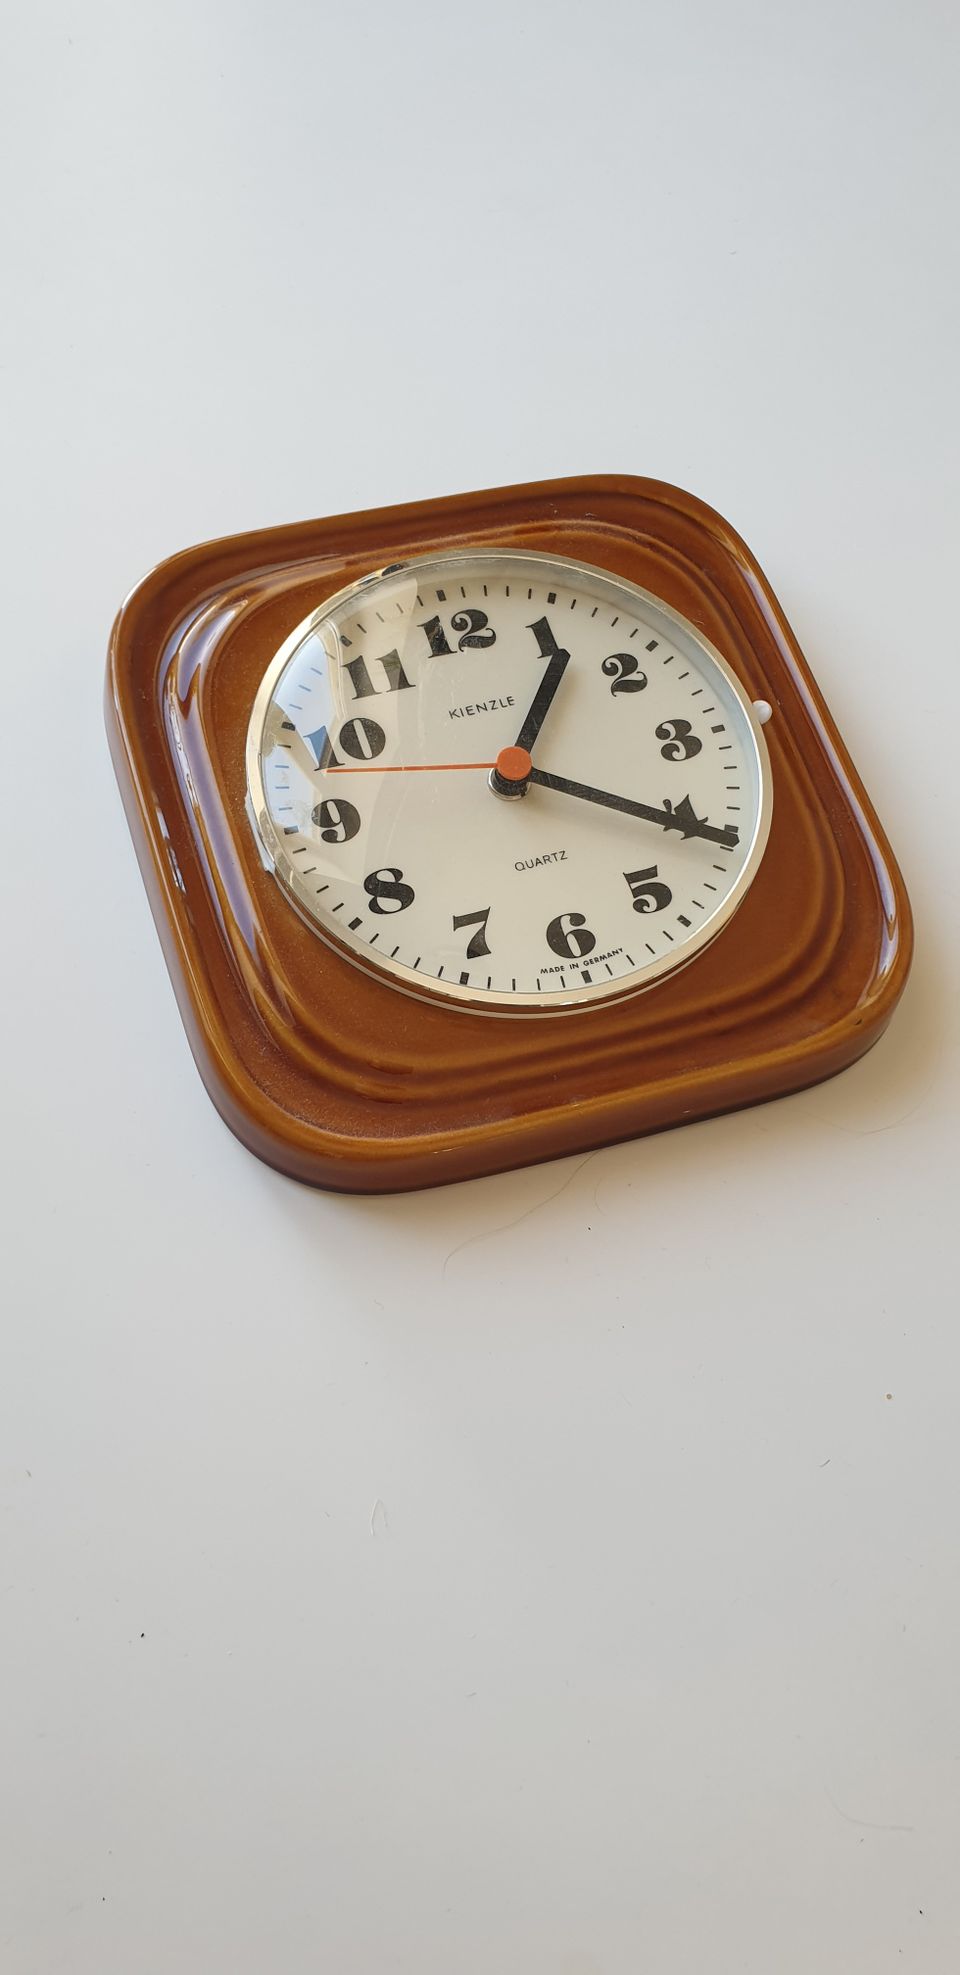 Vintage-kello (Kienzle)